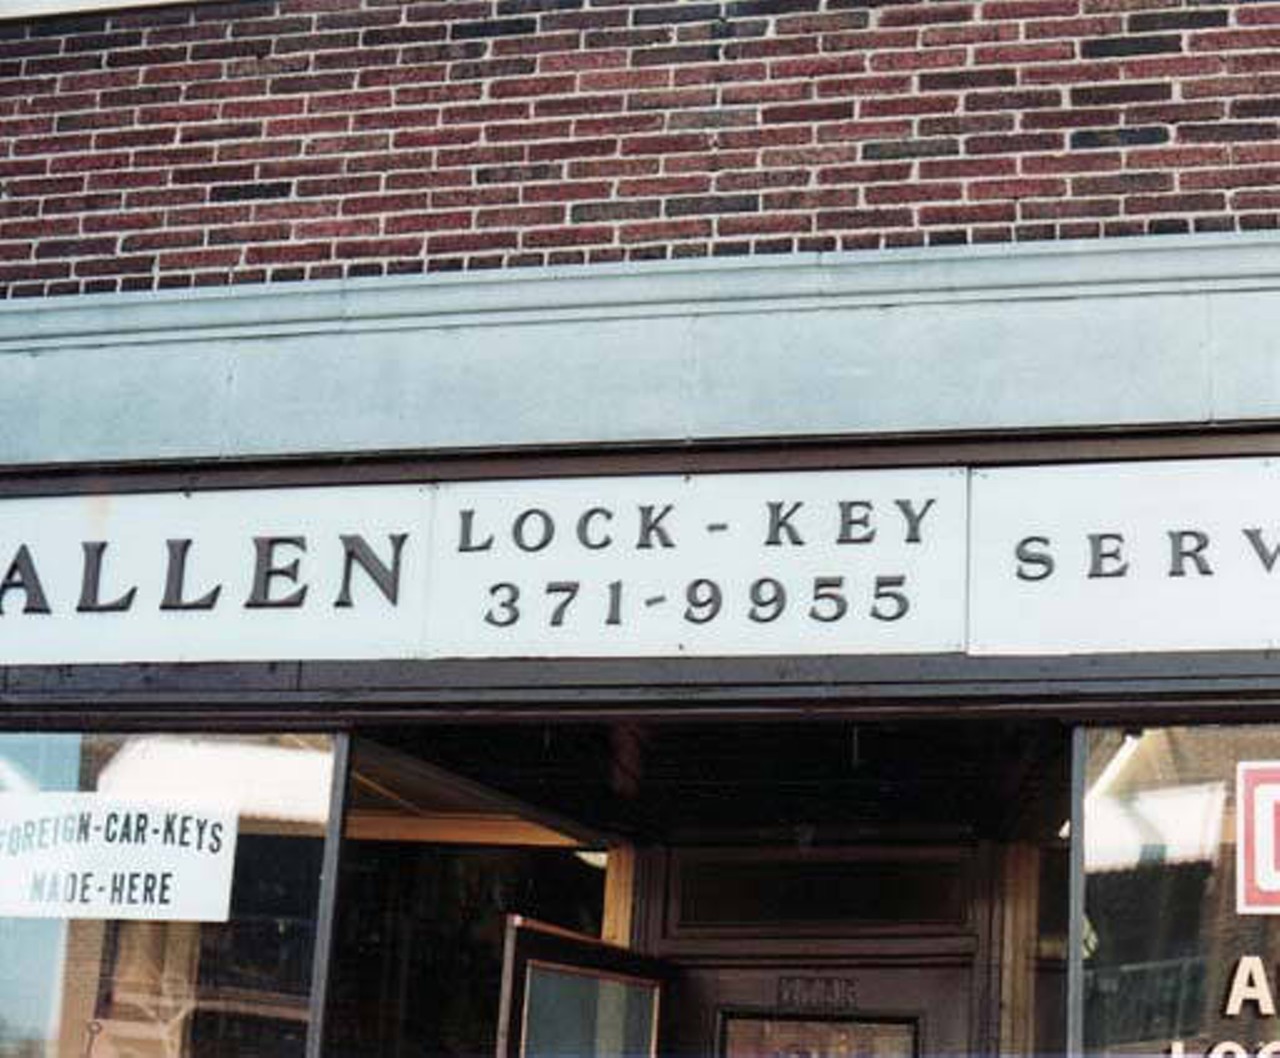 Allen Lock & Key Service (Cleveland Heights, Ohio) 1982